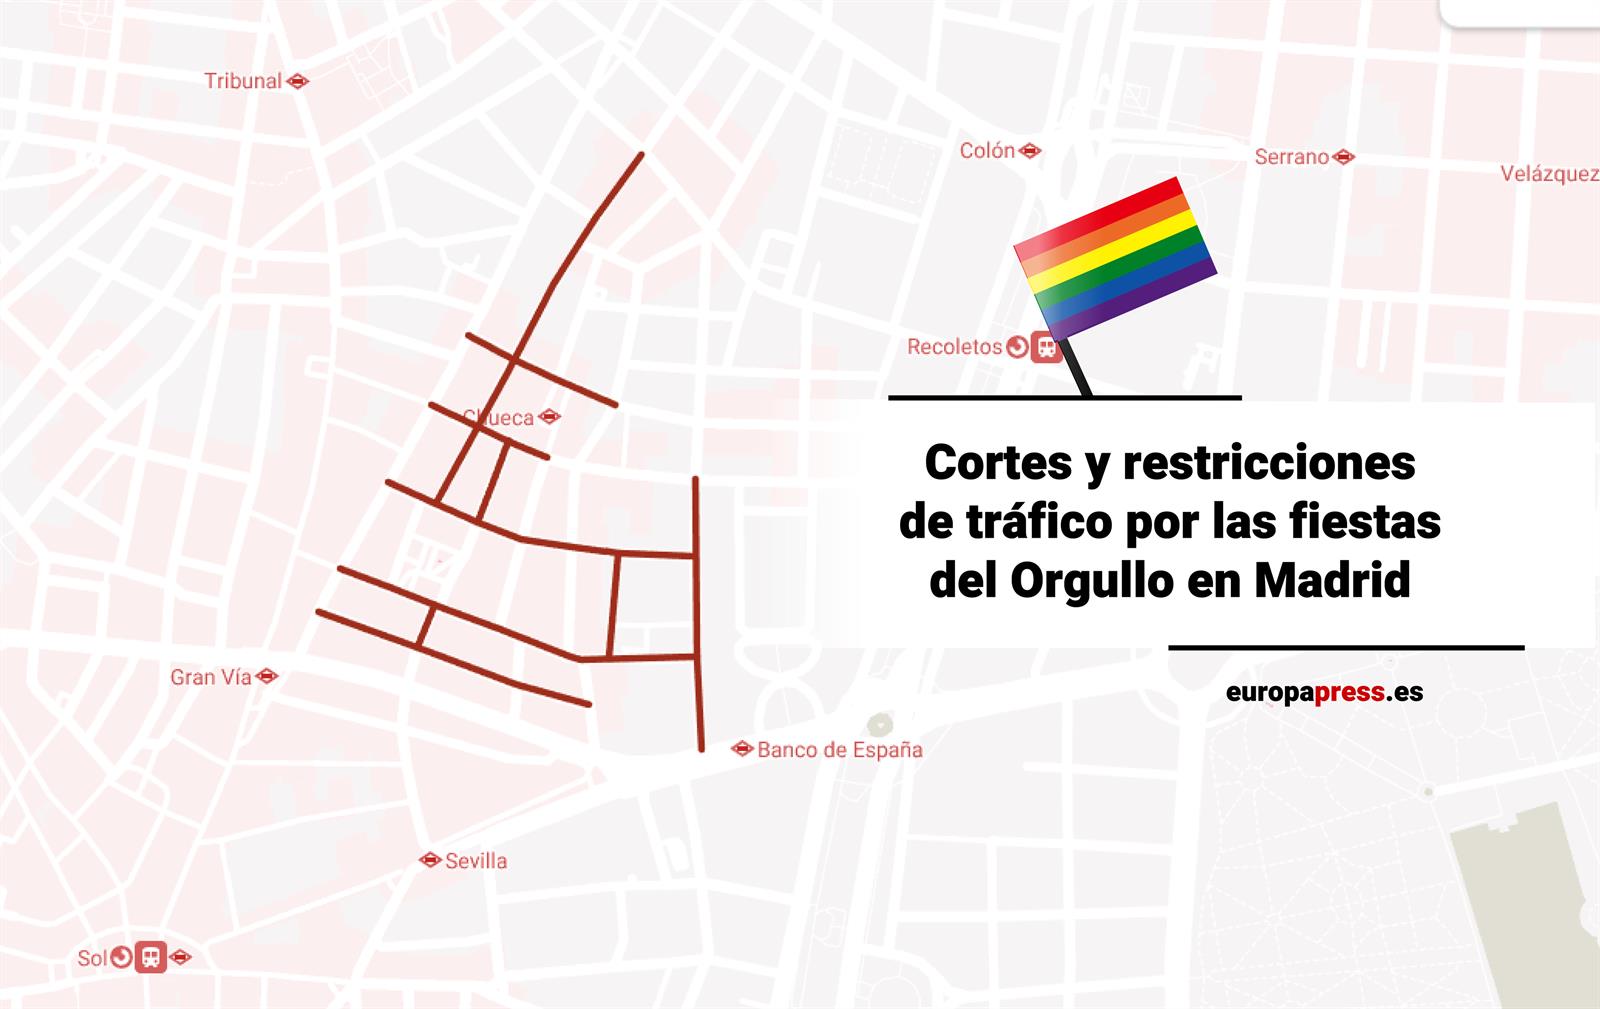 Cortes y restricciones de tráfico por las fiestas del Orgullo en Madrid